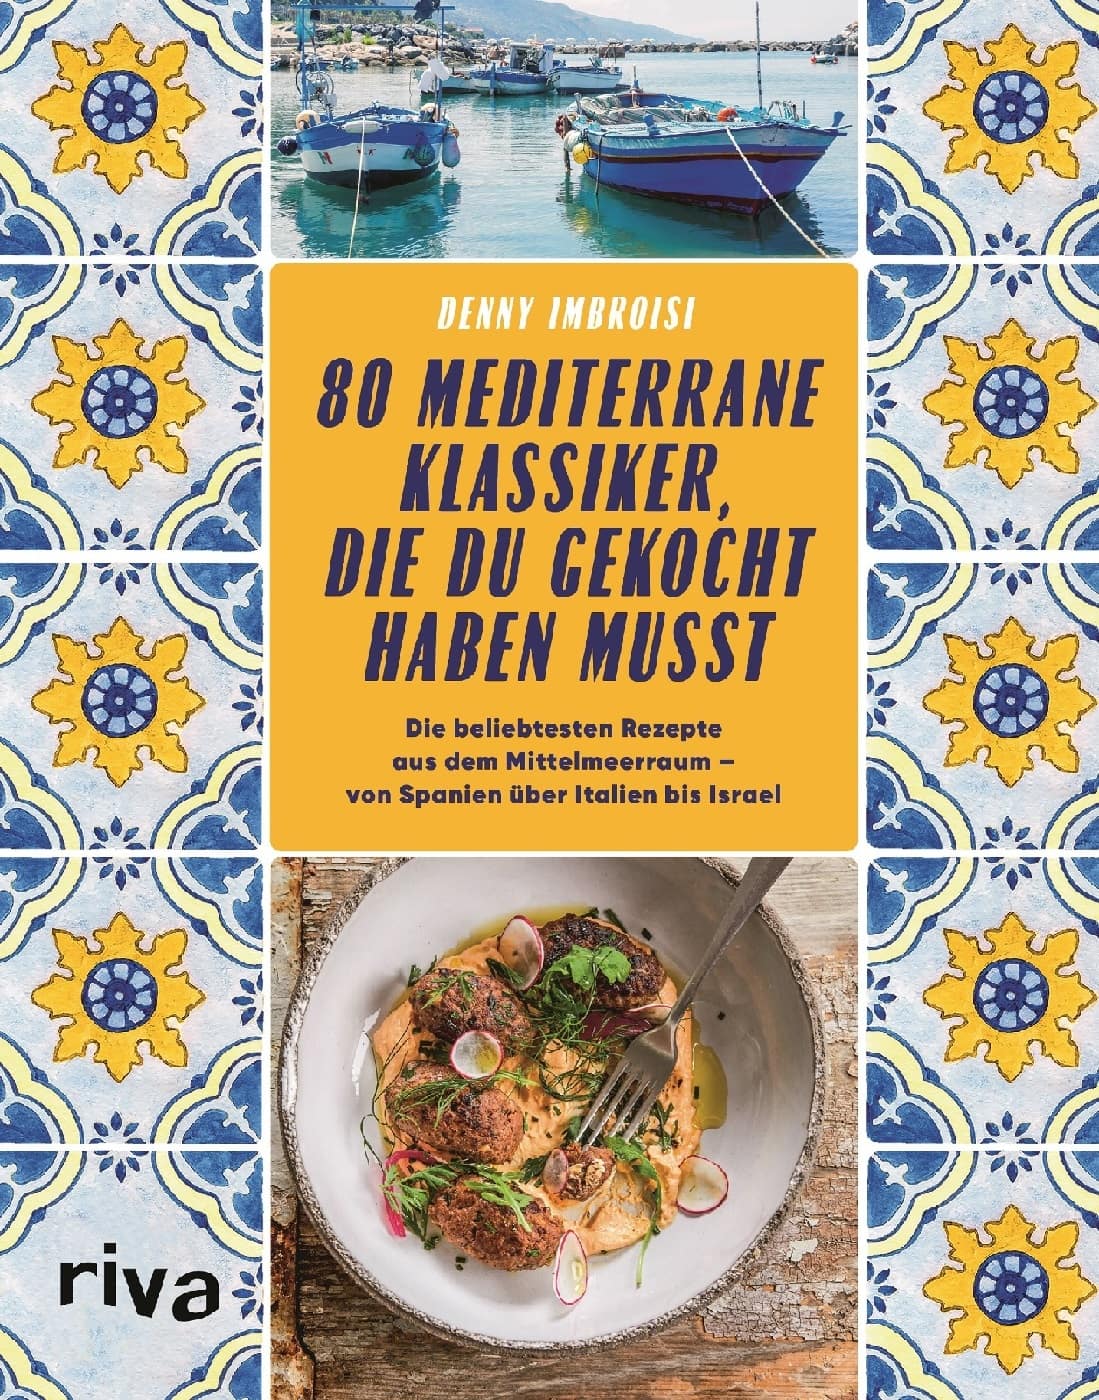 Das Buchcover von "80 mediterrane Klassiker, die du gekocht haben musst"